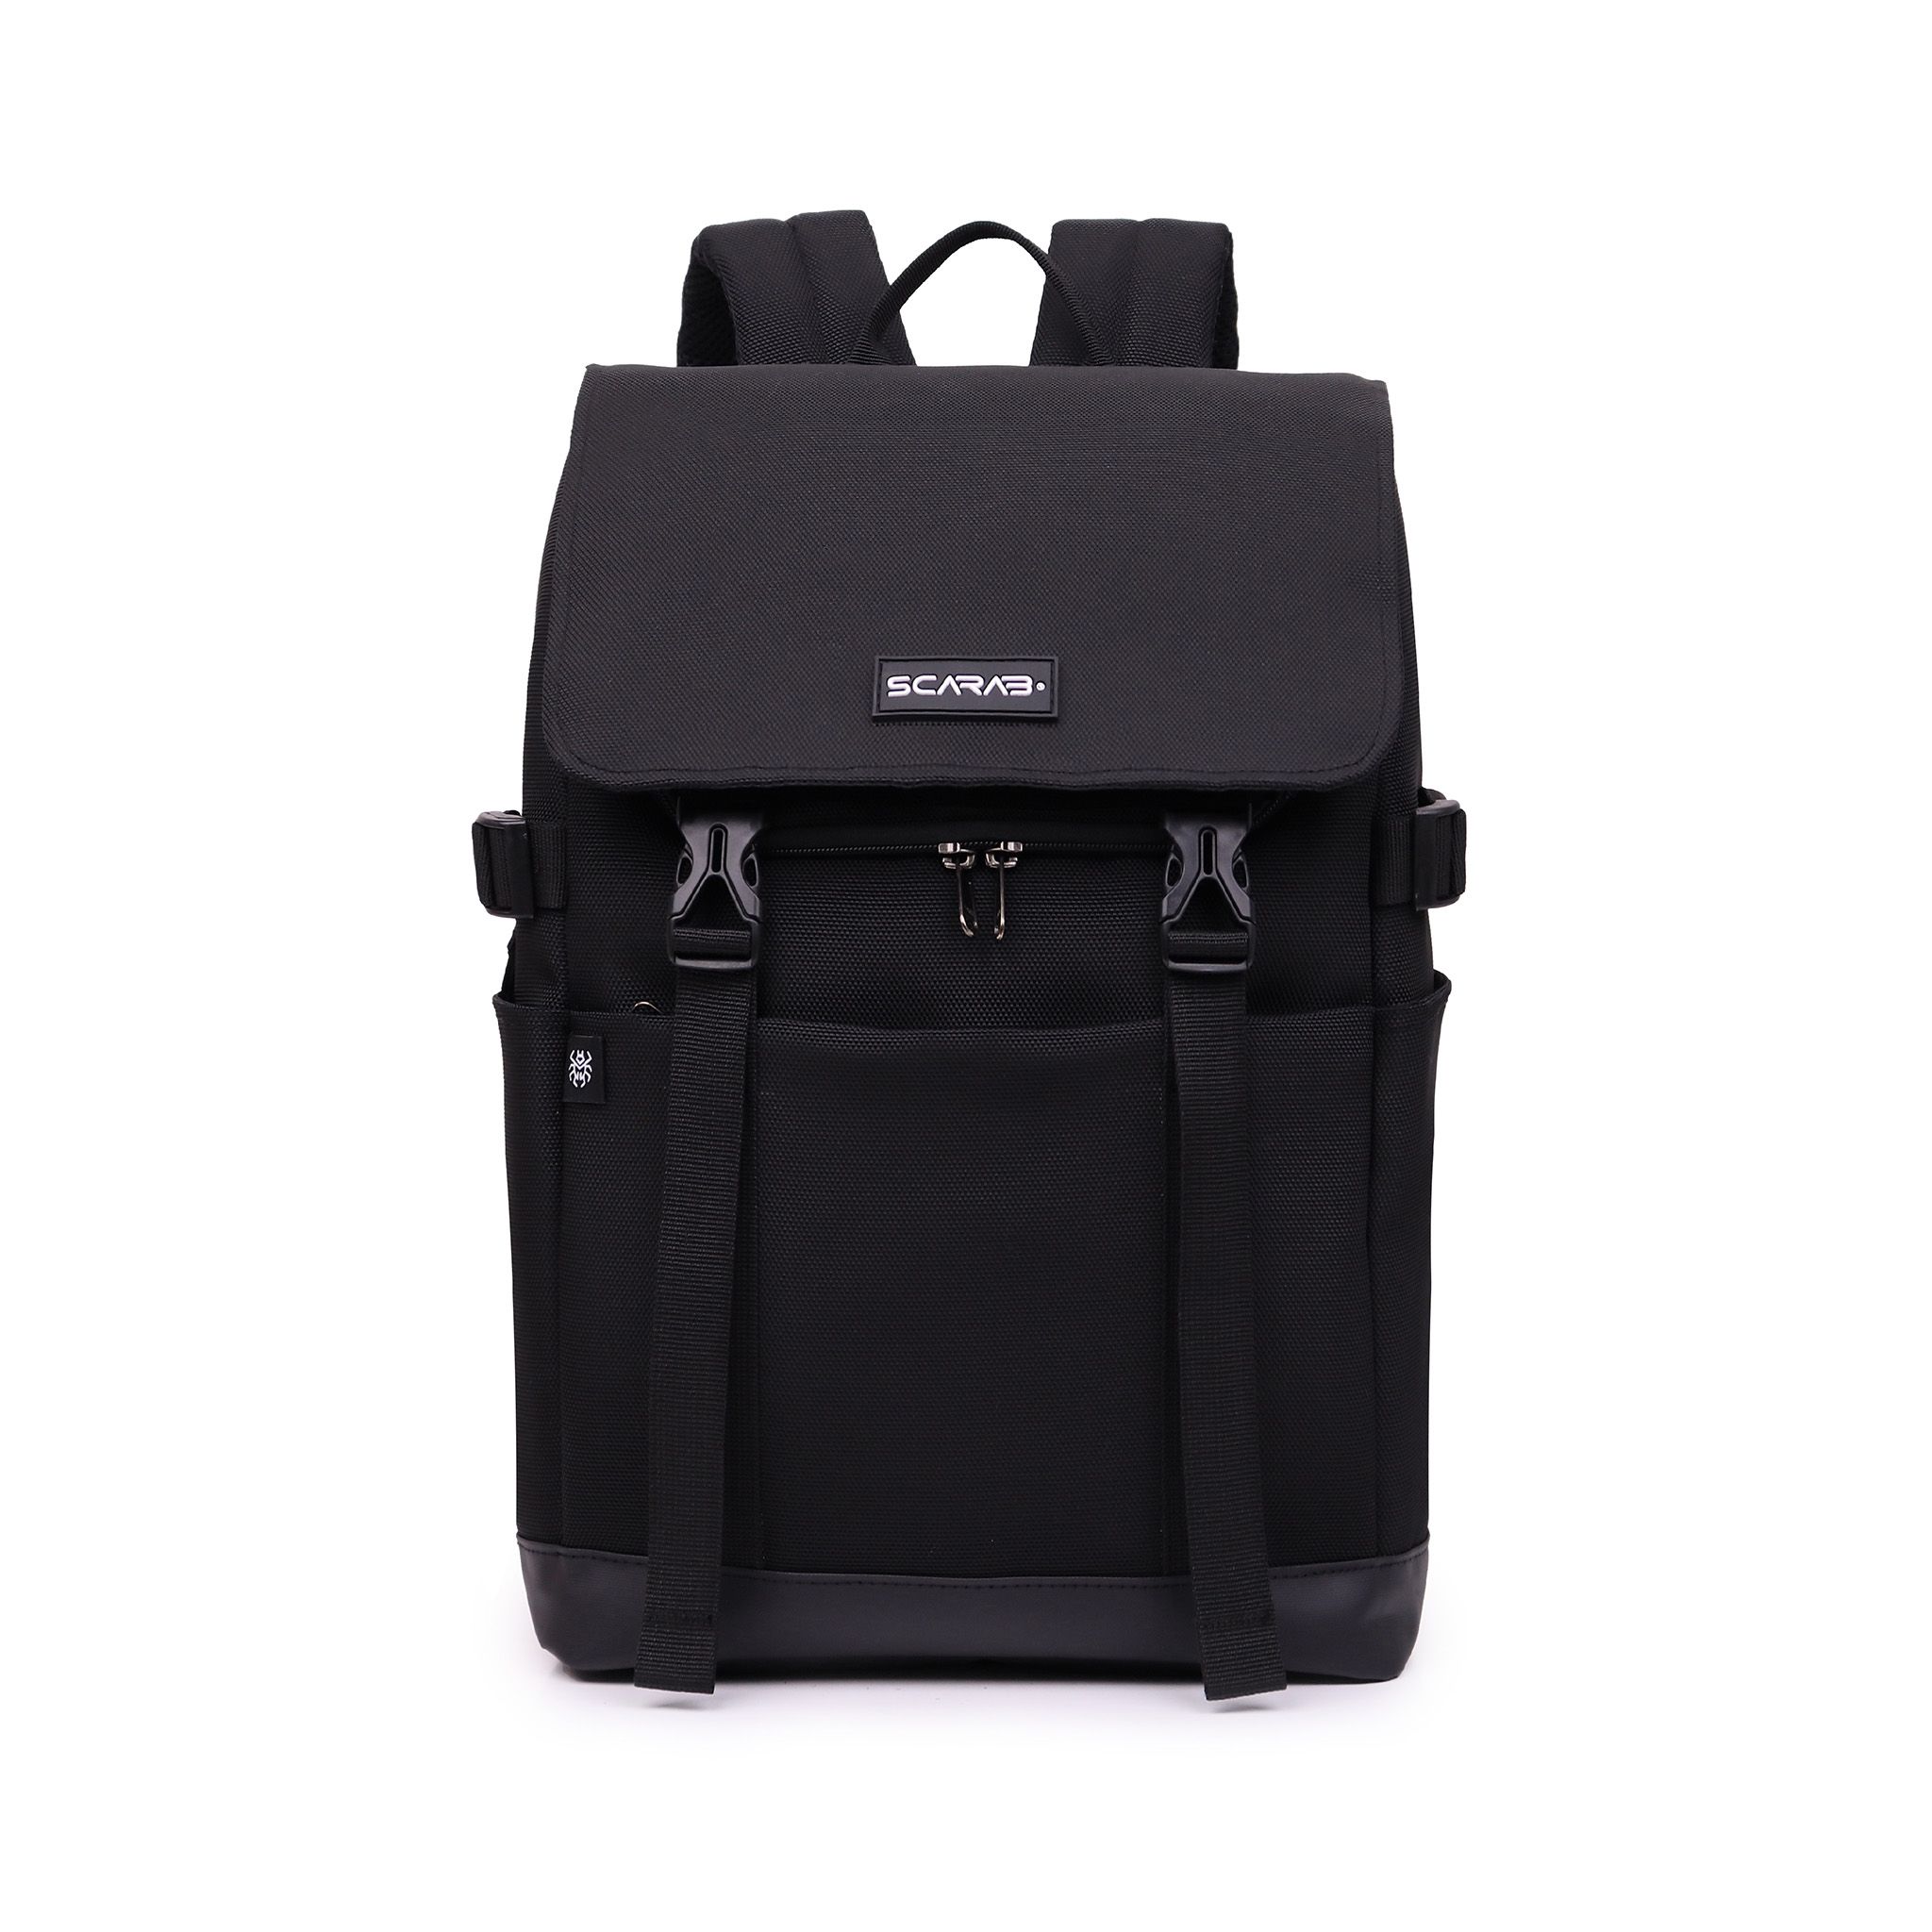  Urban Fabric Backpack - Black 